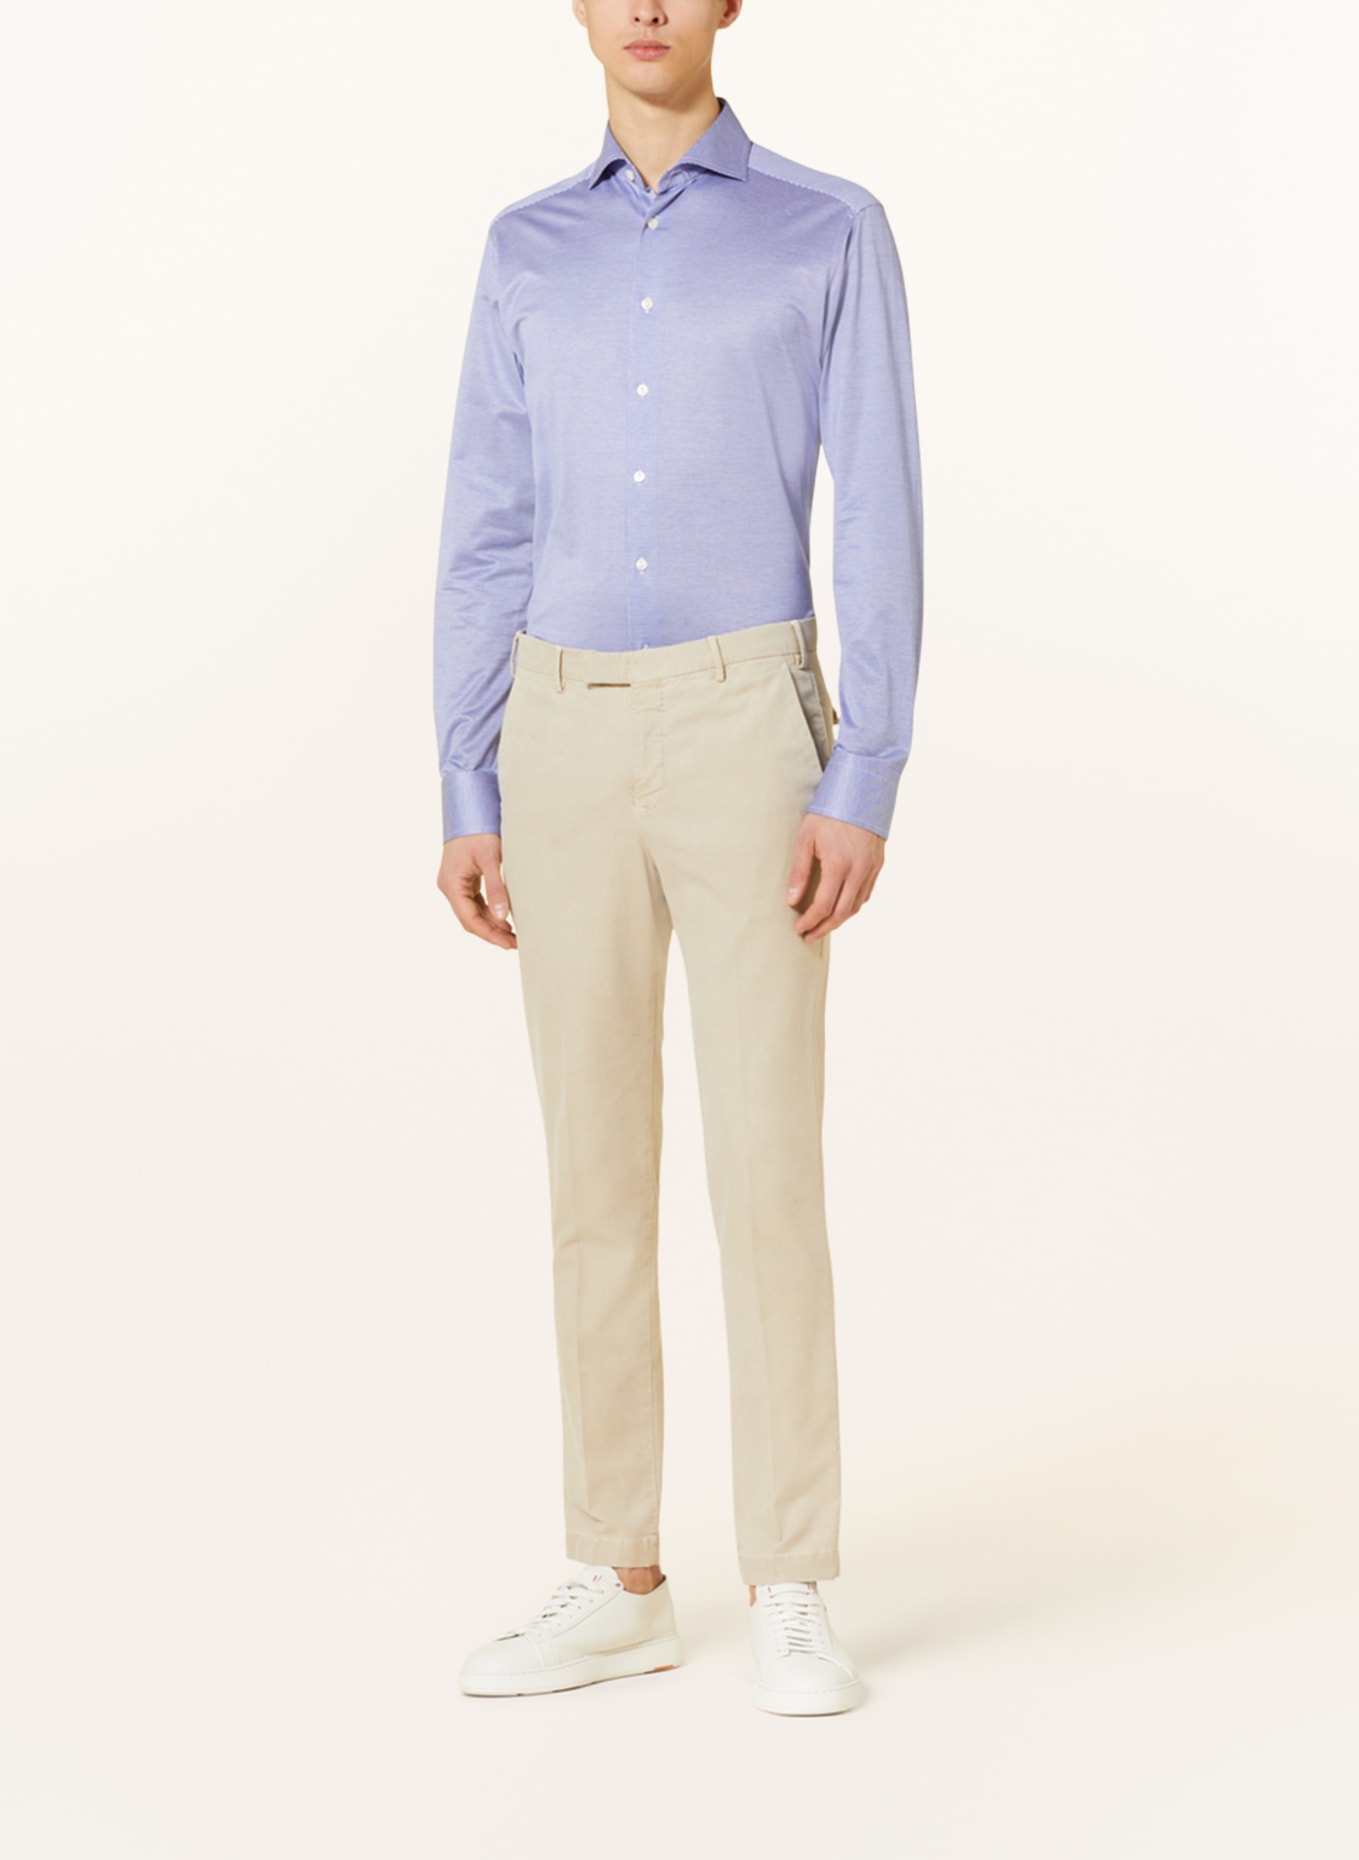 ETON Hemd Slim Fit, Farbe: BLAU/ WEISS (Bild 2)